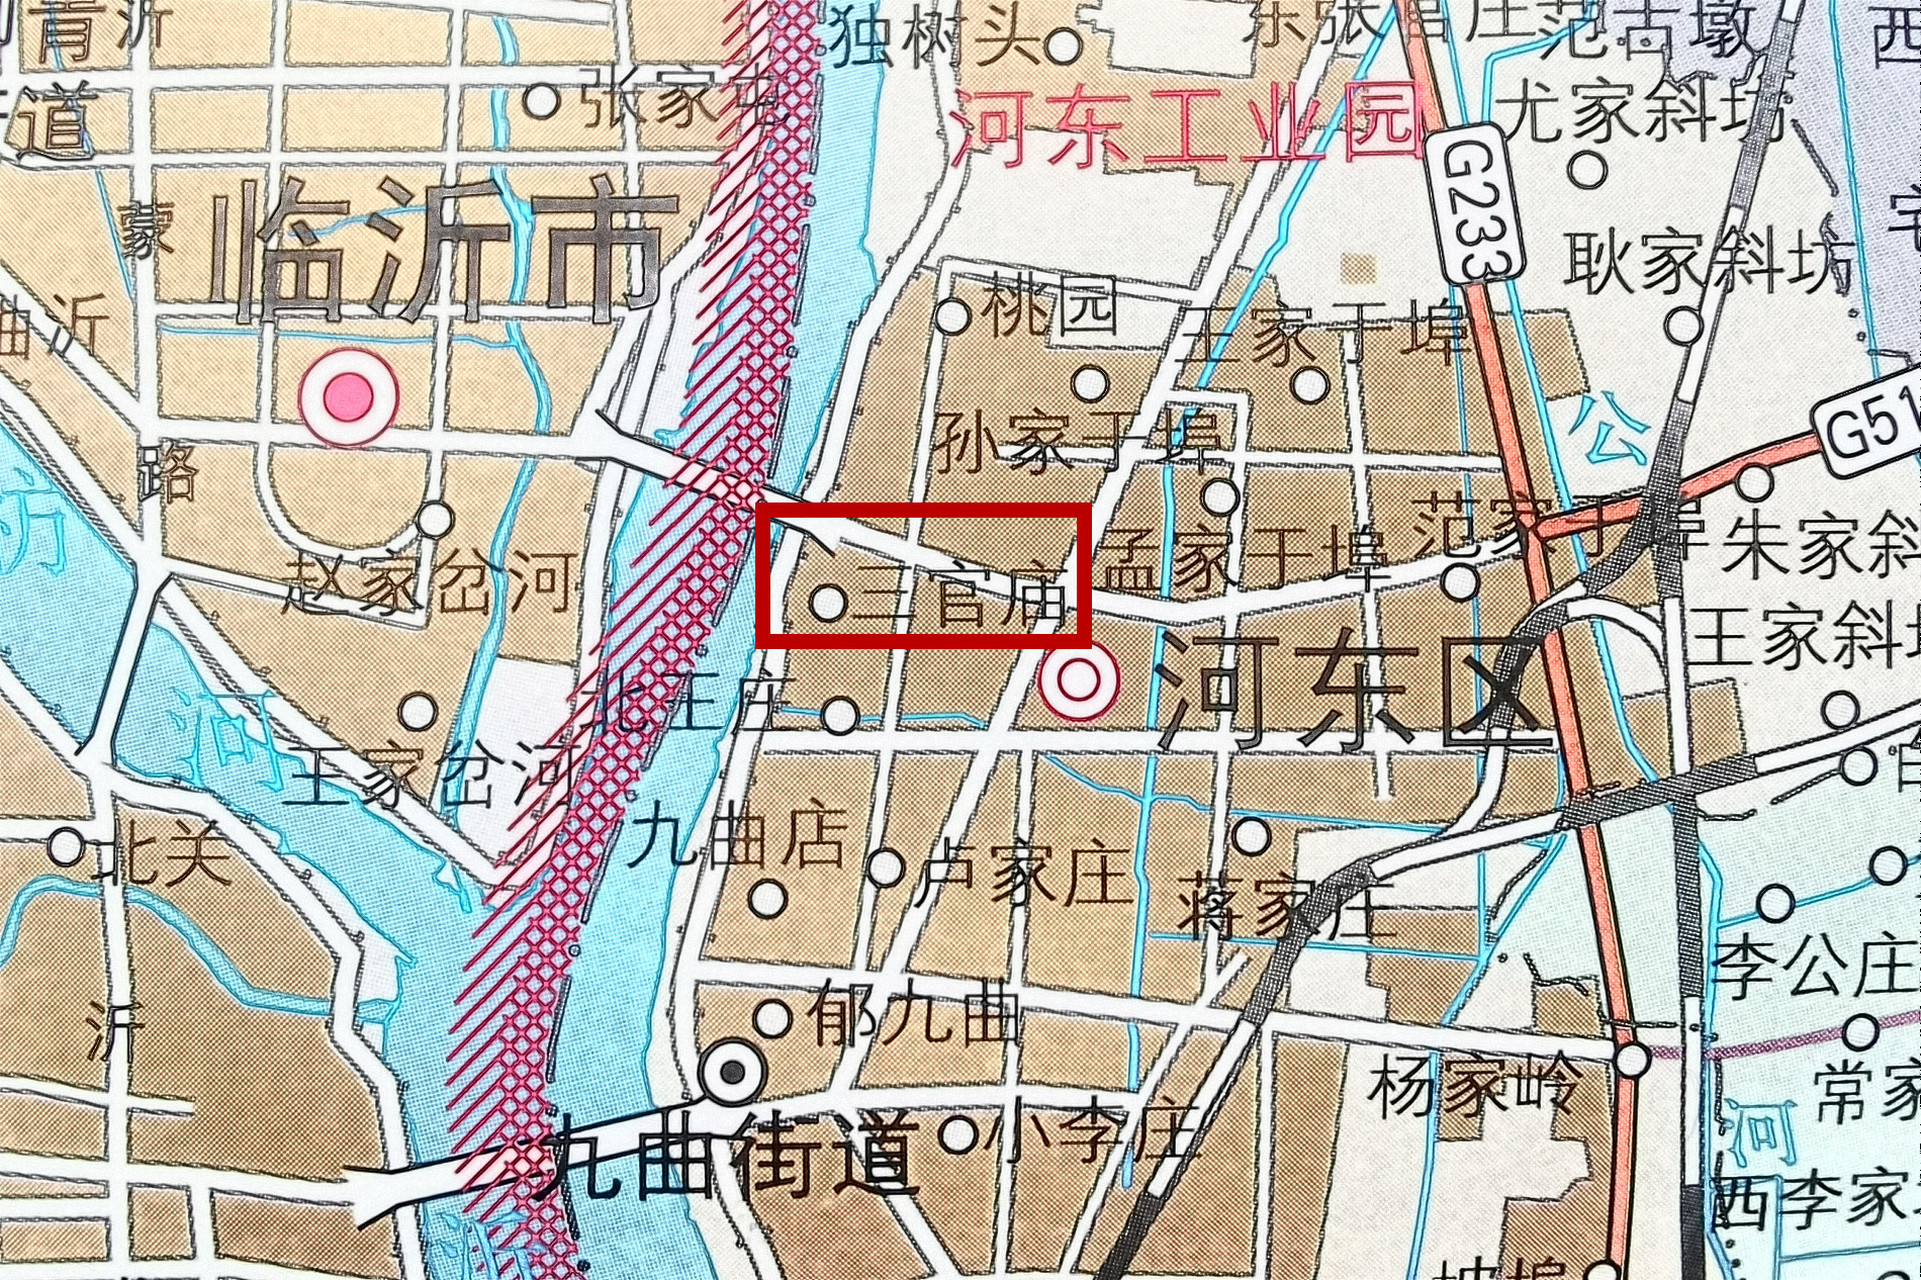 在临沂市河东区九曲街道辖区内,有一个叫做"三官庙"的社区(原来的三官